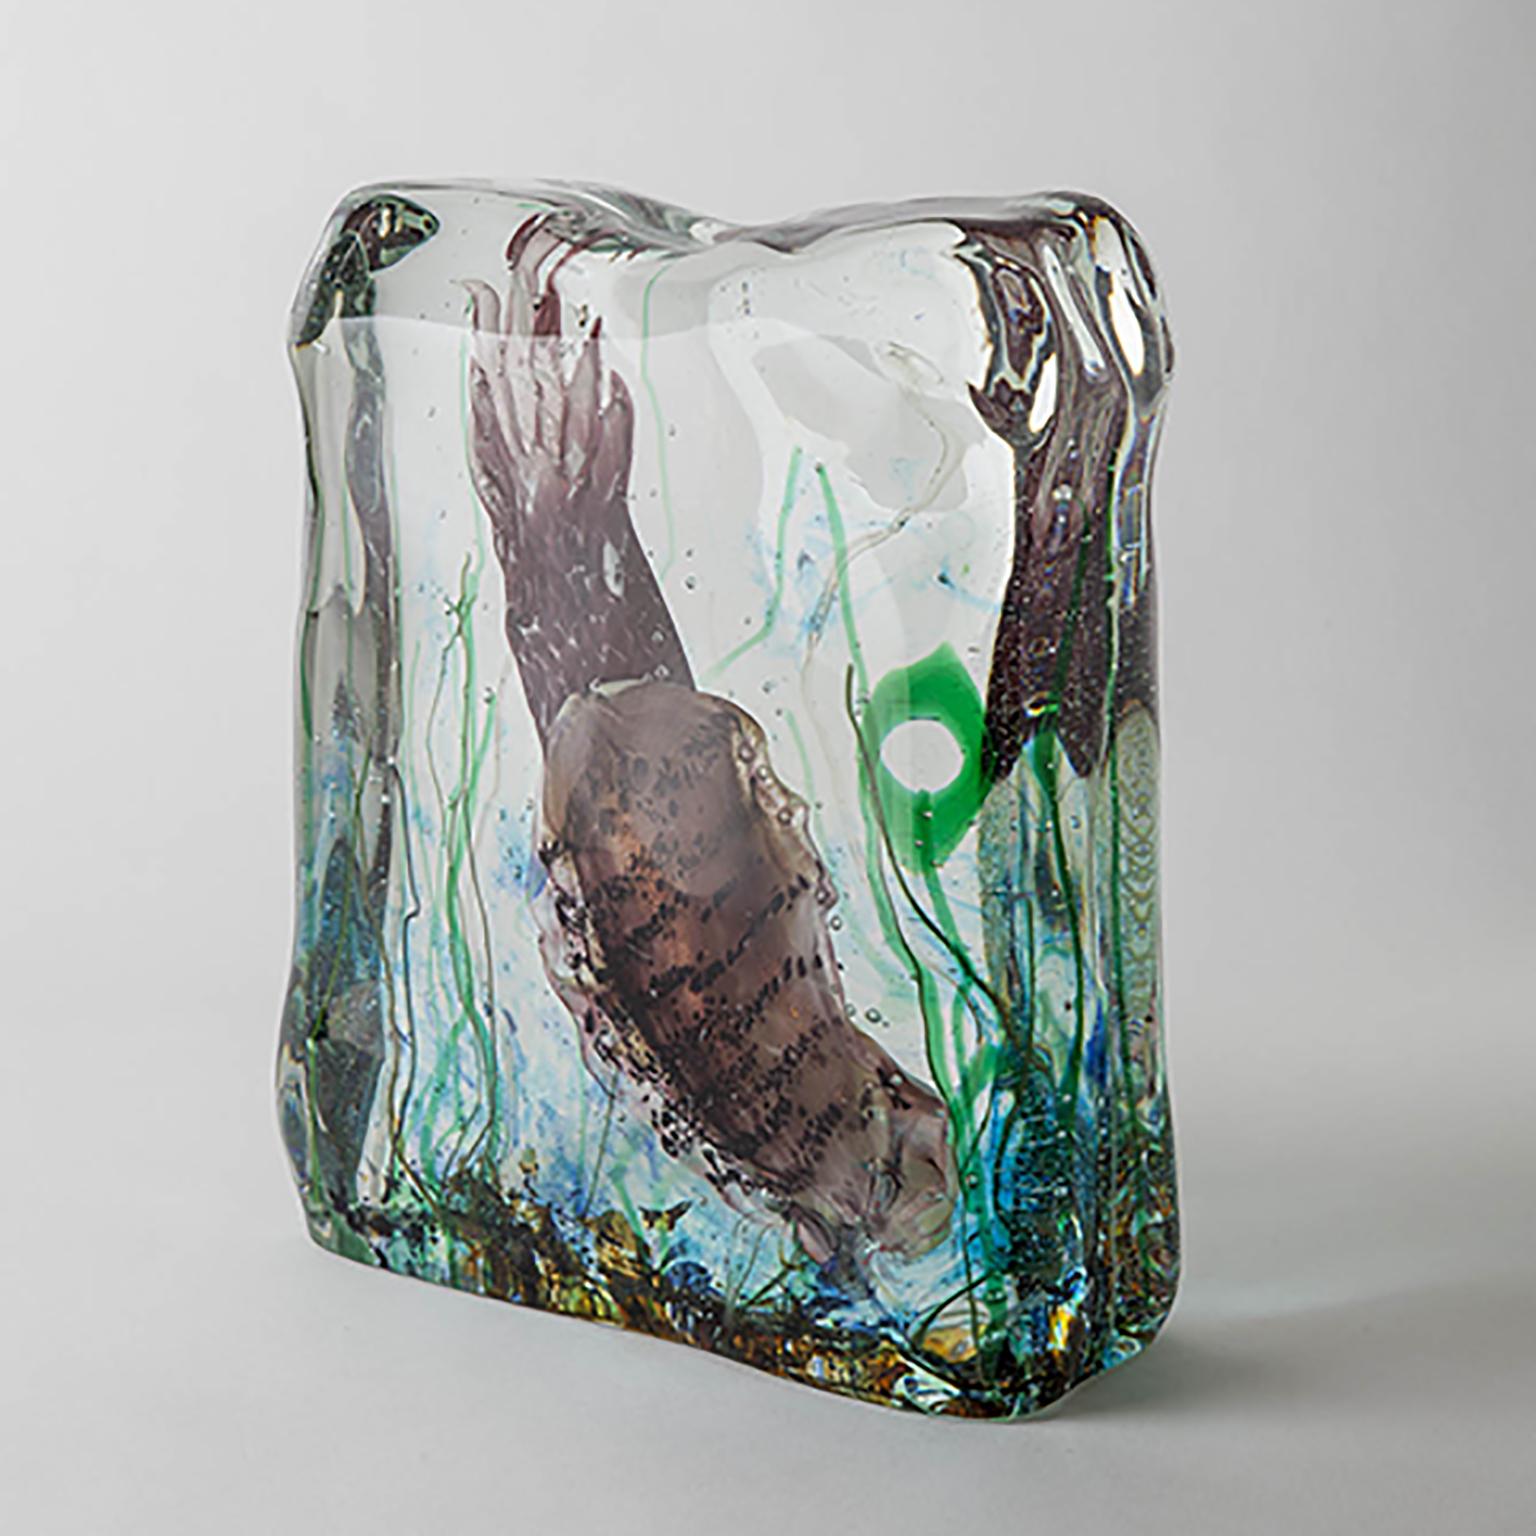 Élevez votre espace avec cet aquarium exquis en verre de Murano, fabriqué de manière experte en utilisant la technique sommerso. Ce processus complexe consiste à souffler un sujet détaillé dans le verre, qui est ensuite immergé dans du verre